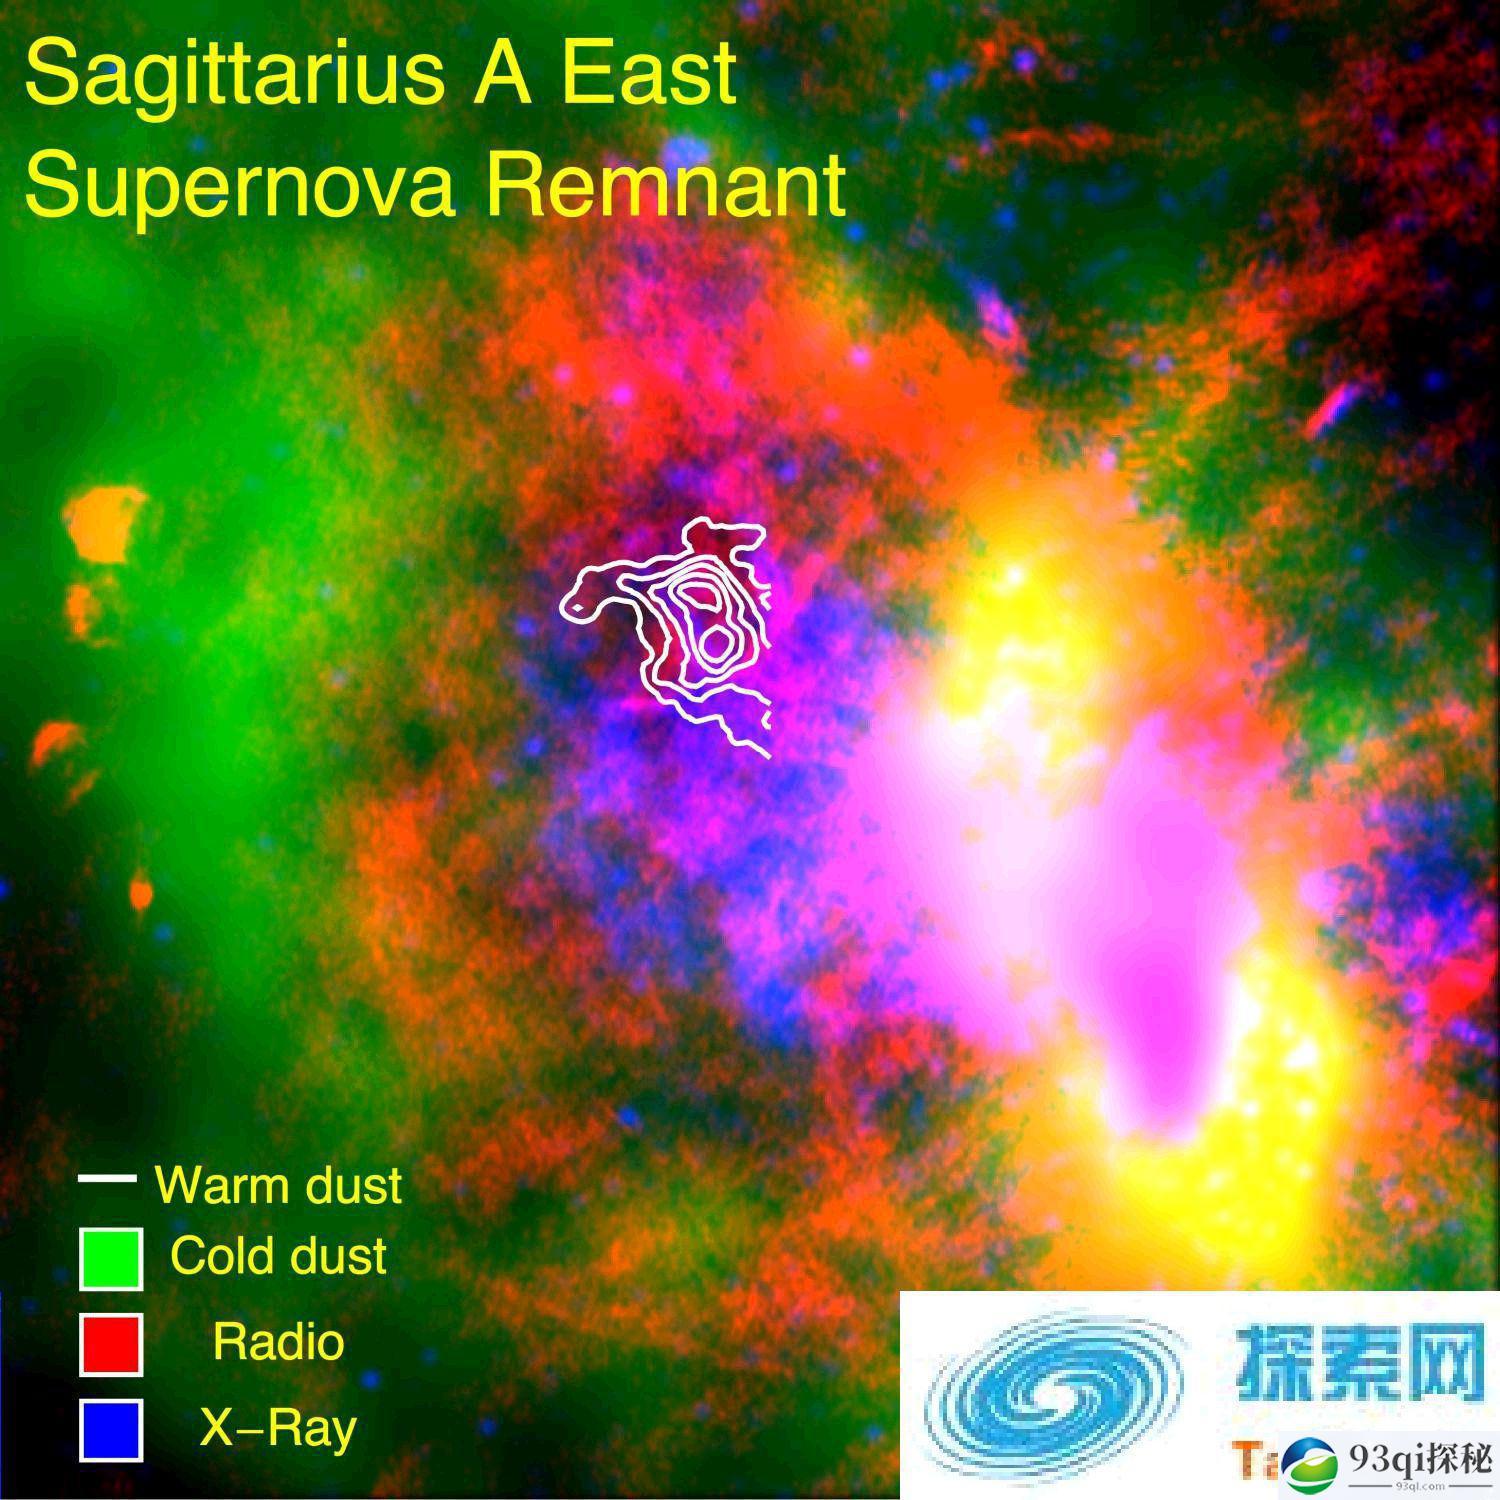 超新星是产生宇宙星尘的工厂？